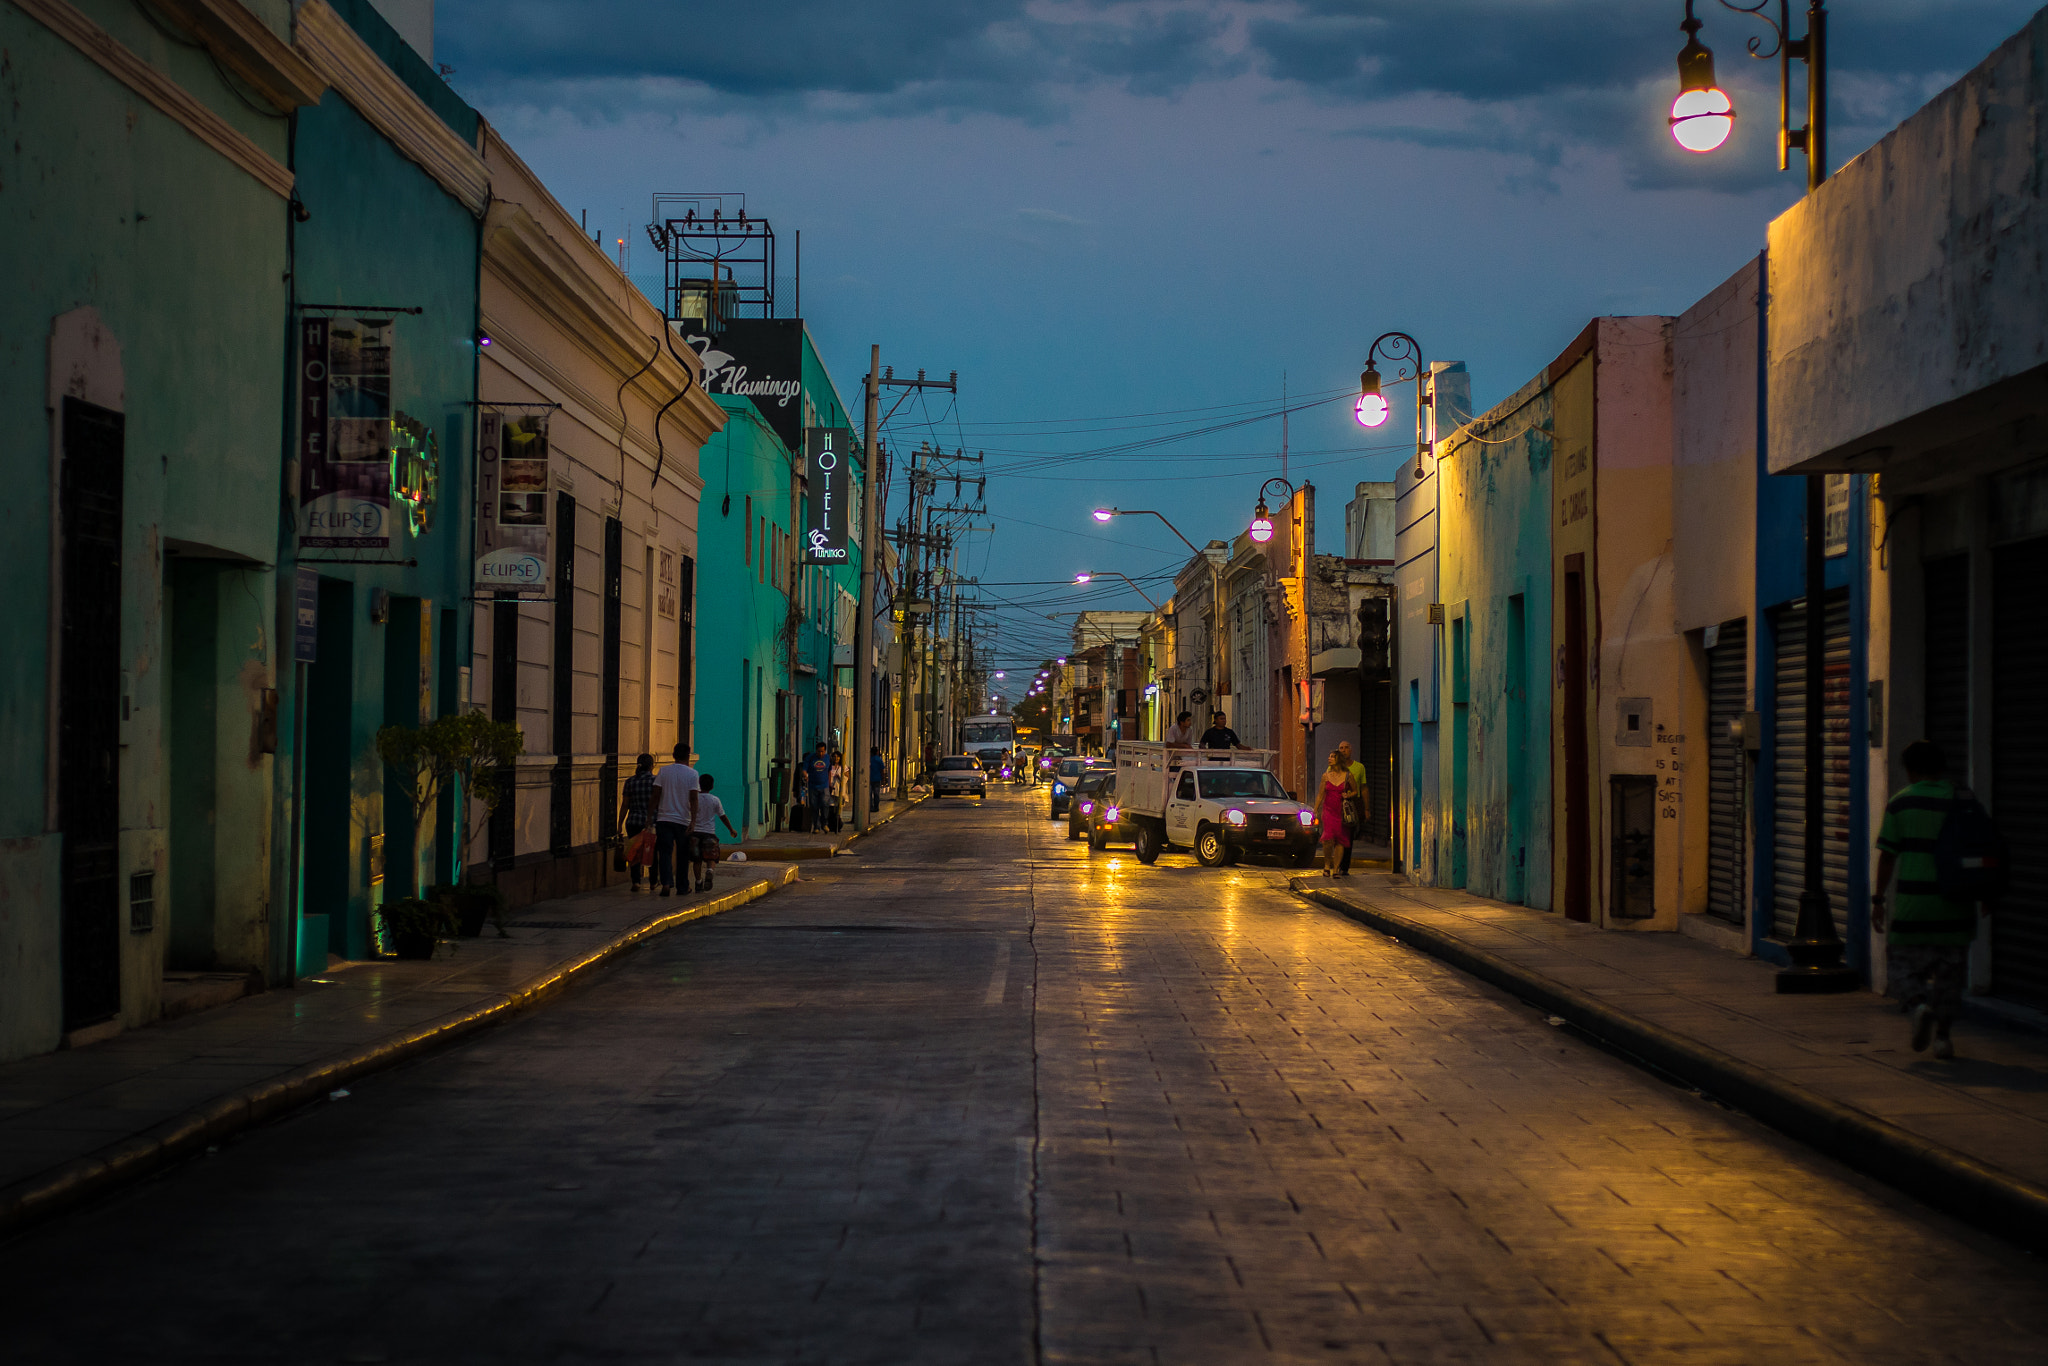 Sony a7R sample photo. Merida city, mexico. photography